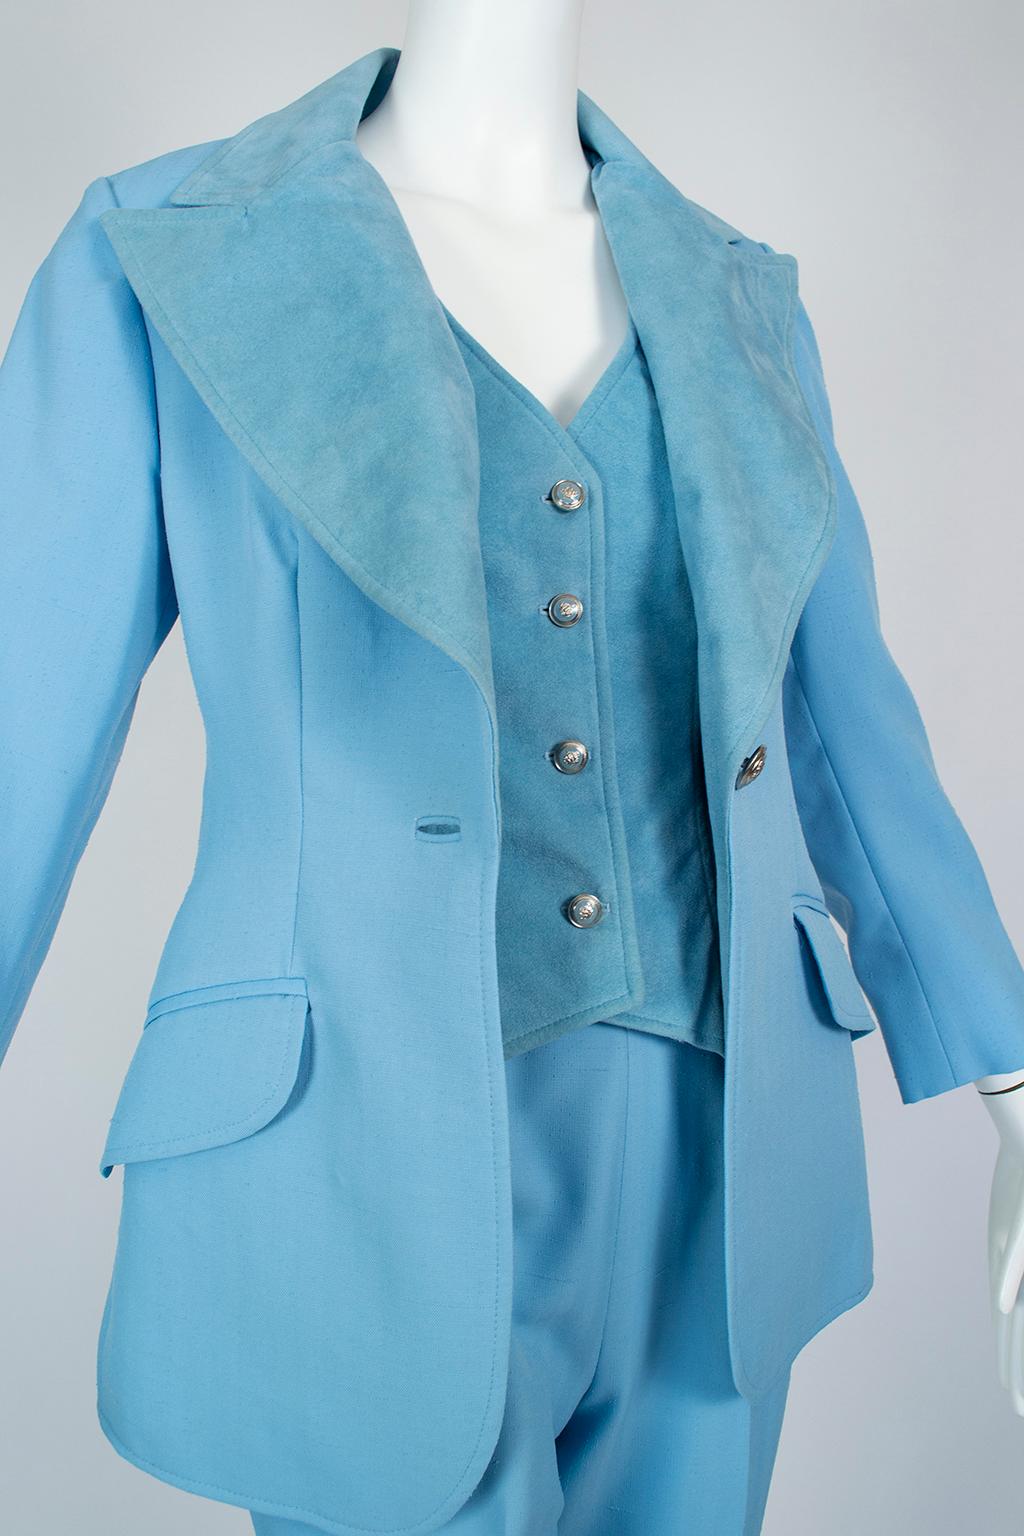 Lilli Ann Paris Powder Blue 3-Piece Western Pant Suit – XS, 1970s For Sale 2